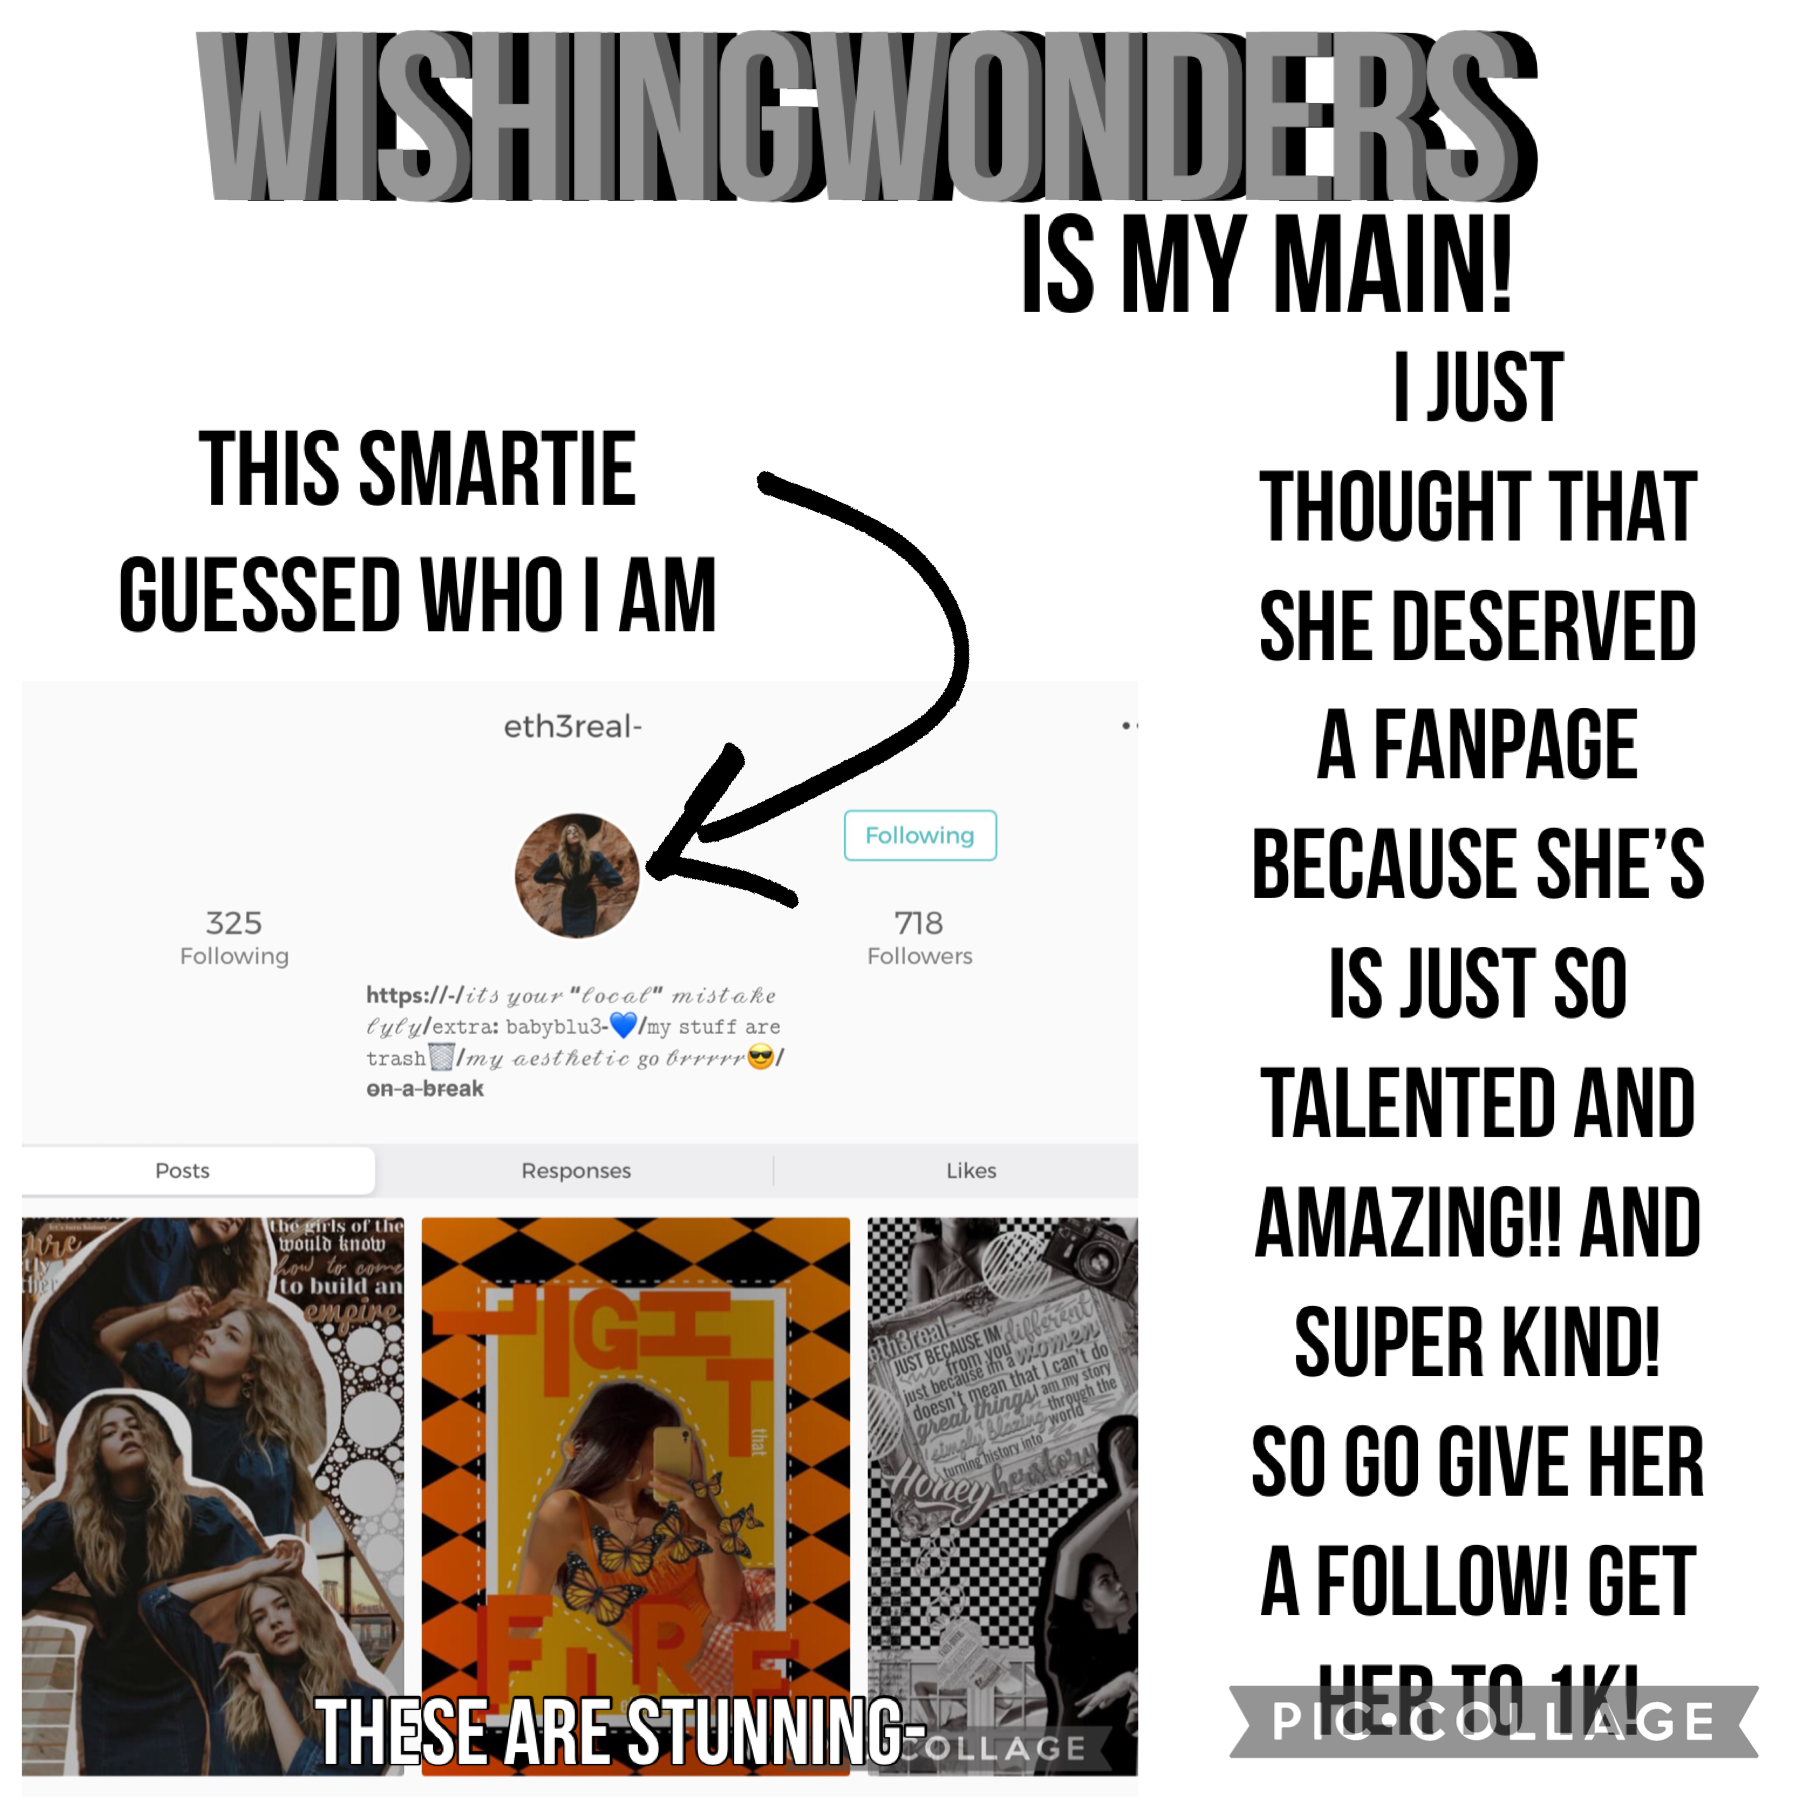 My main is wishingwonders!